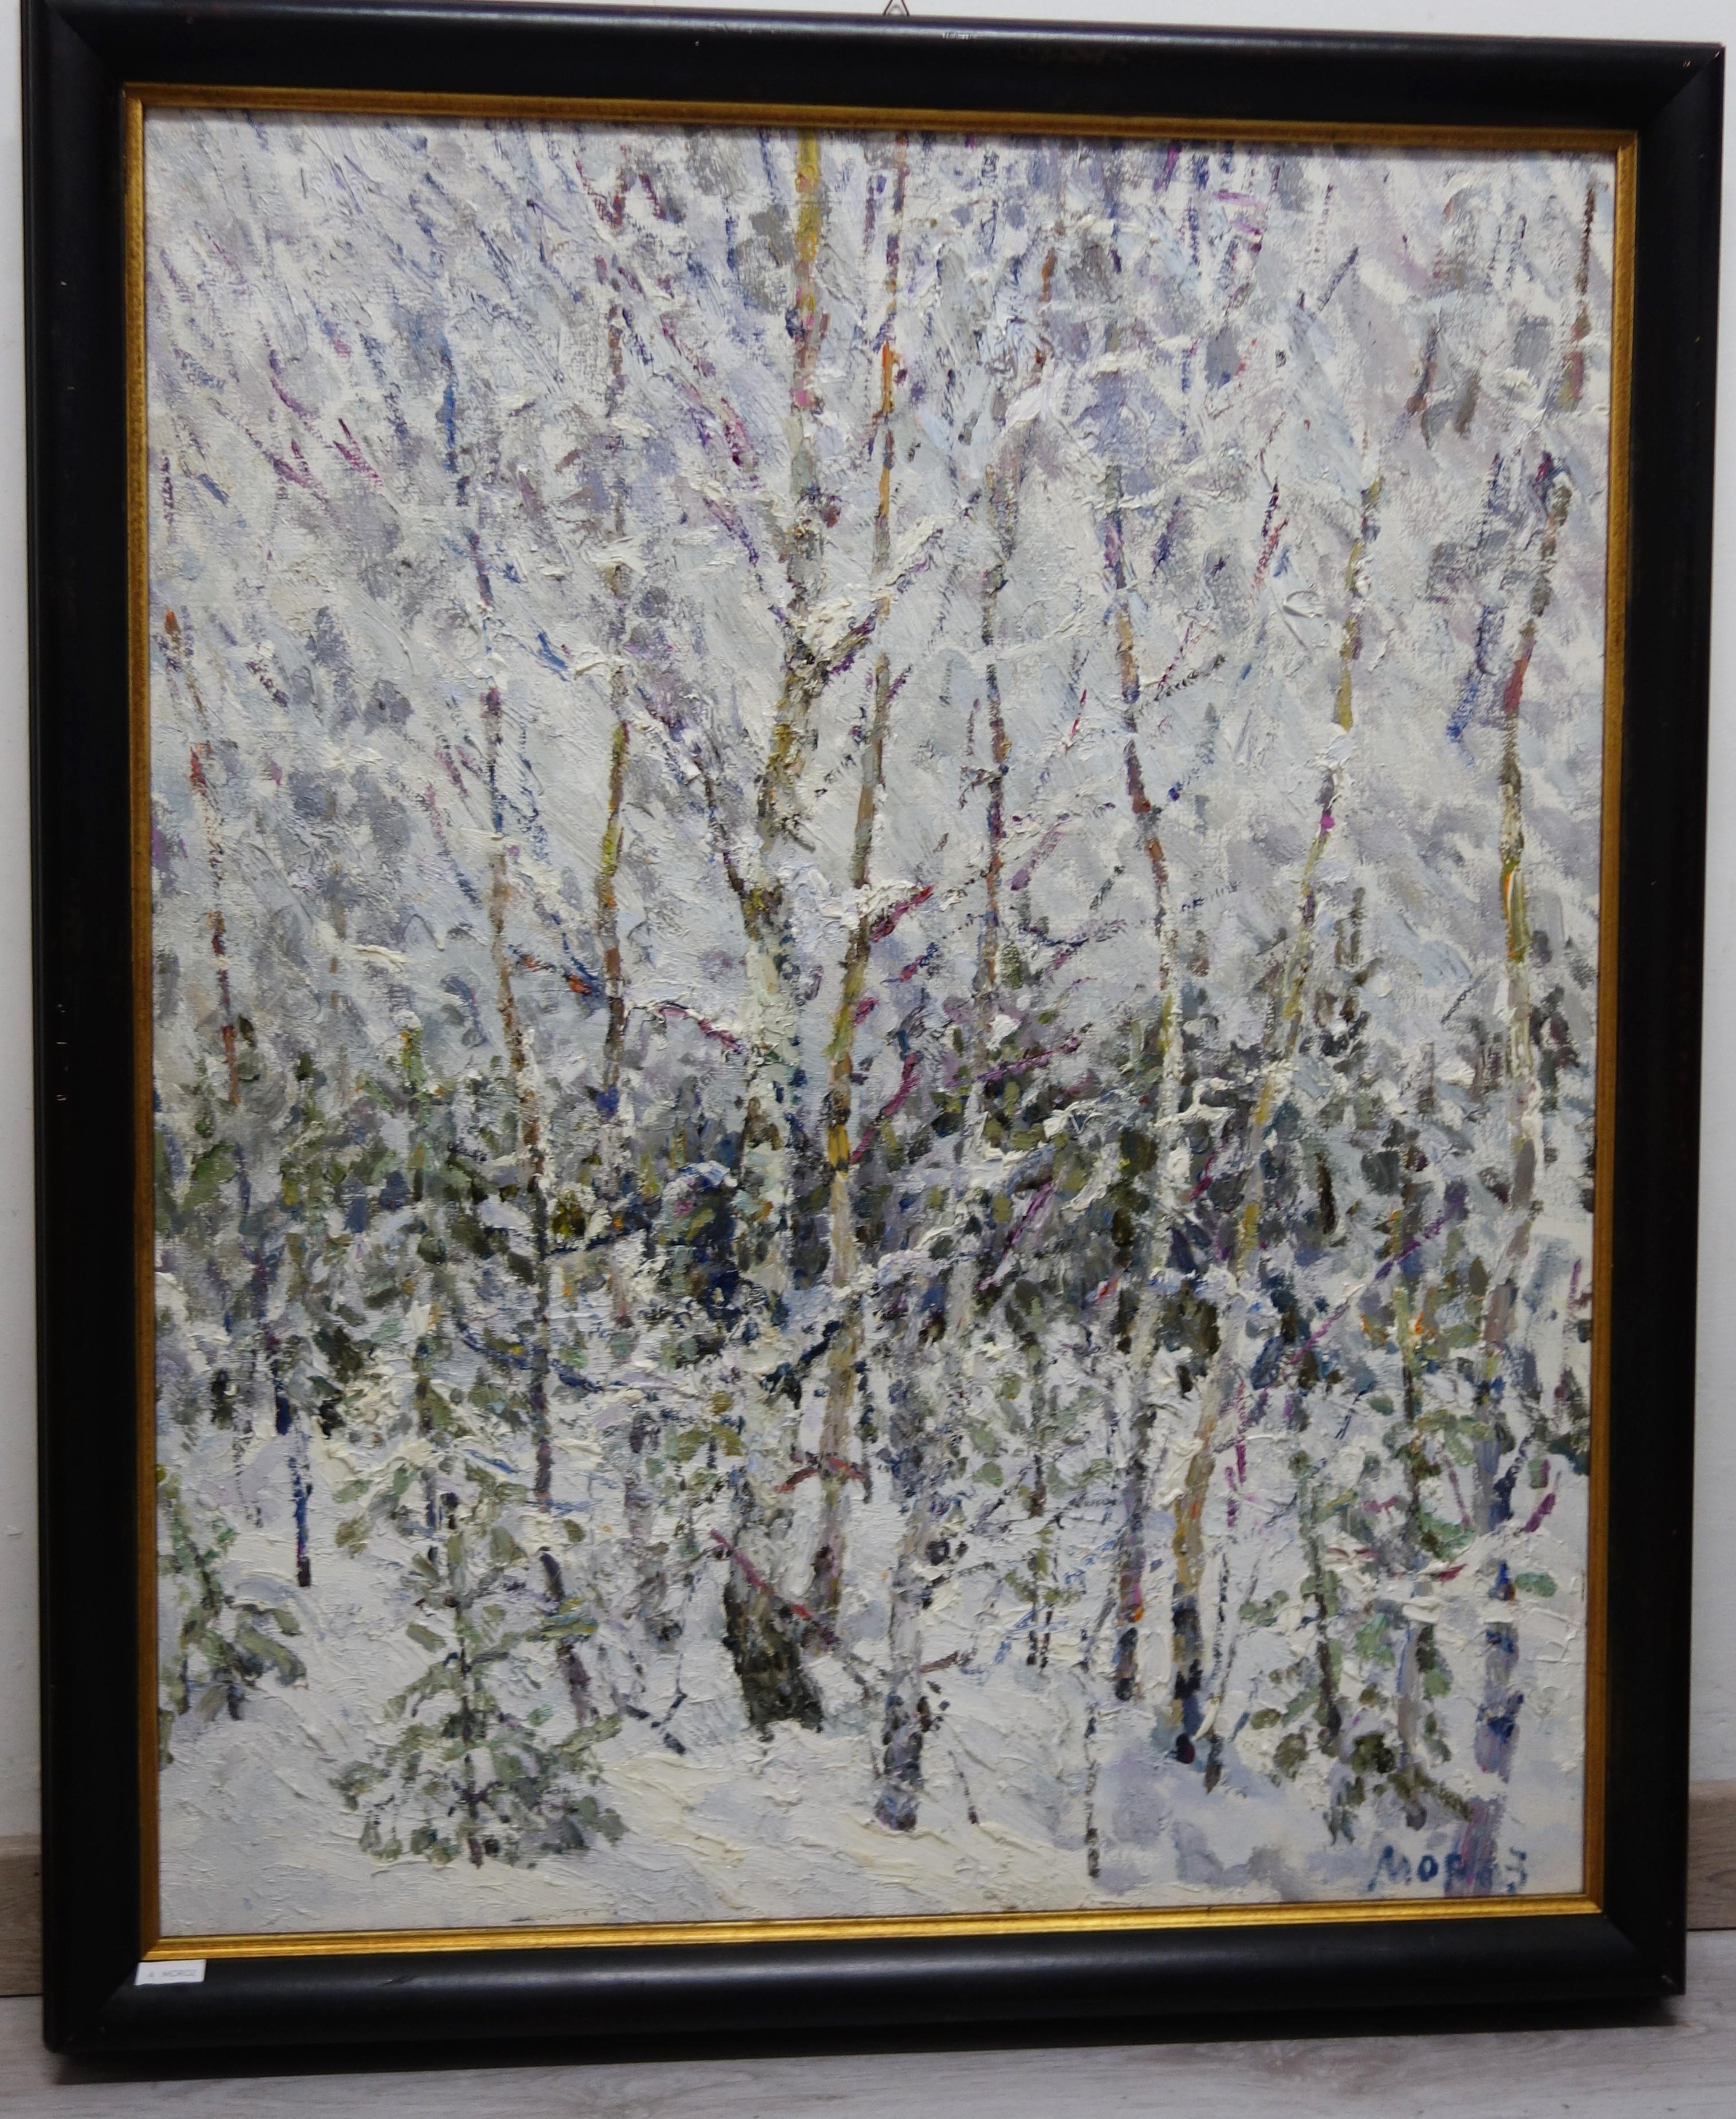 A. Winter dans la forêt, Neige - Huile,  cm. 73 x 90   2004   Expédition gratuite - Painting de Georgij Moroz